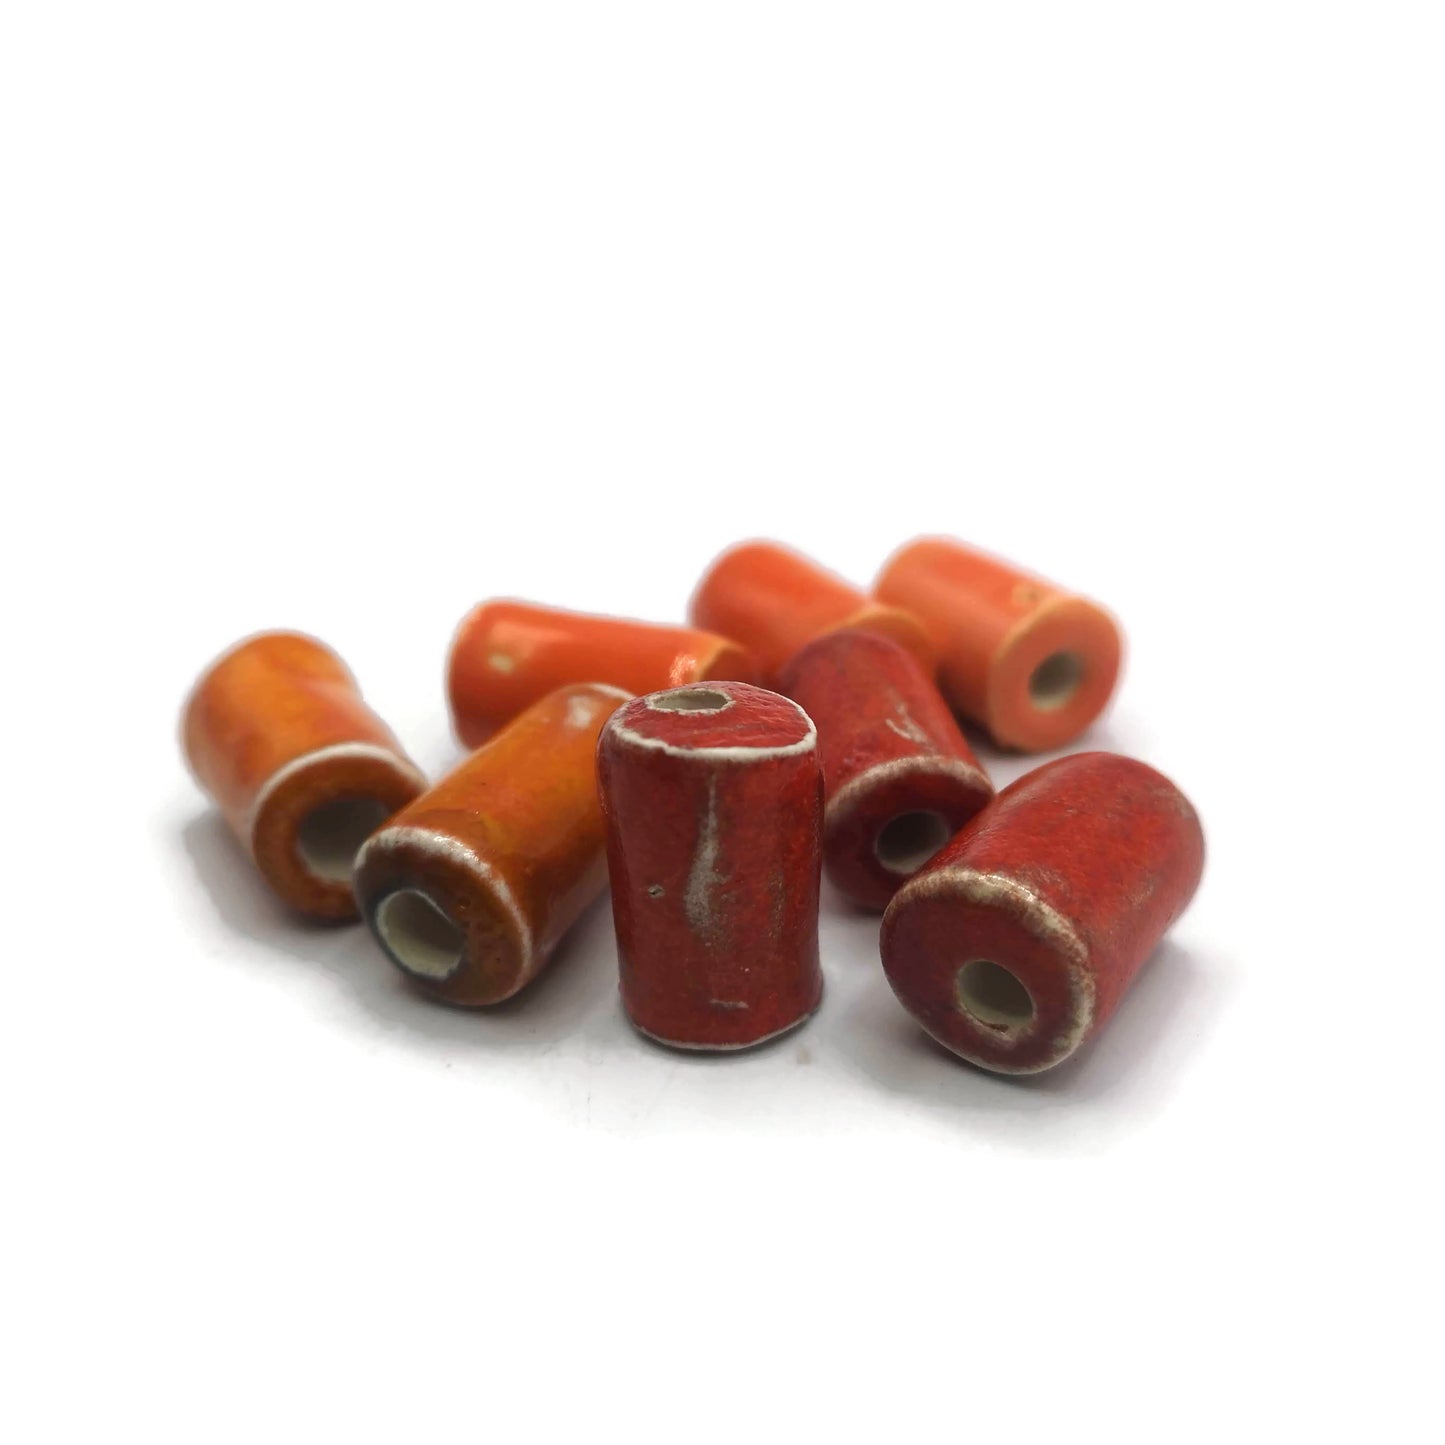 8Pc 20 to 25mm Orange Large Ceramic Tube Beads for Jewelry Making, Large Hole 5mm Macrame Beads